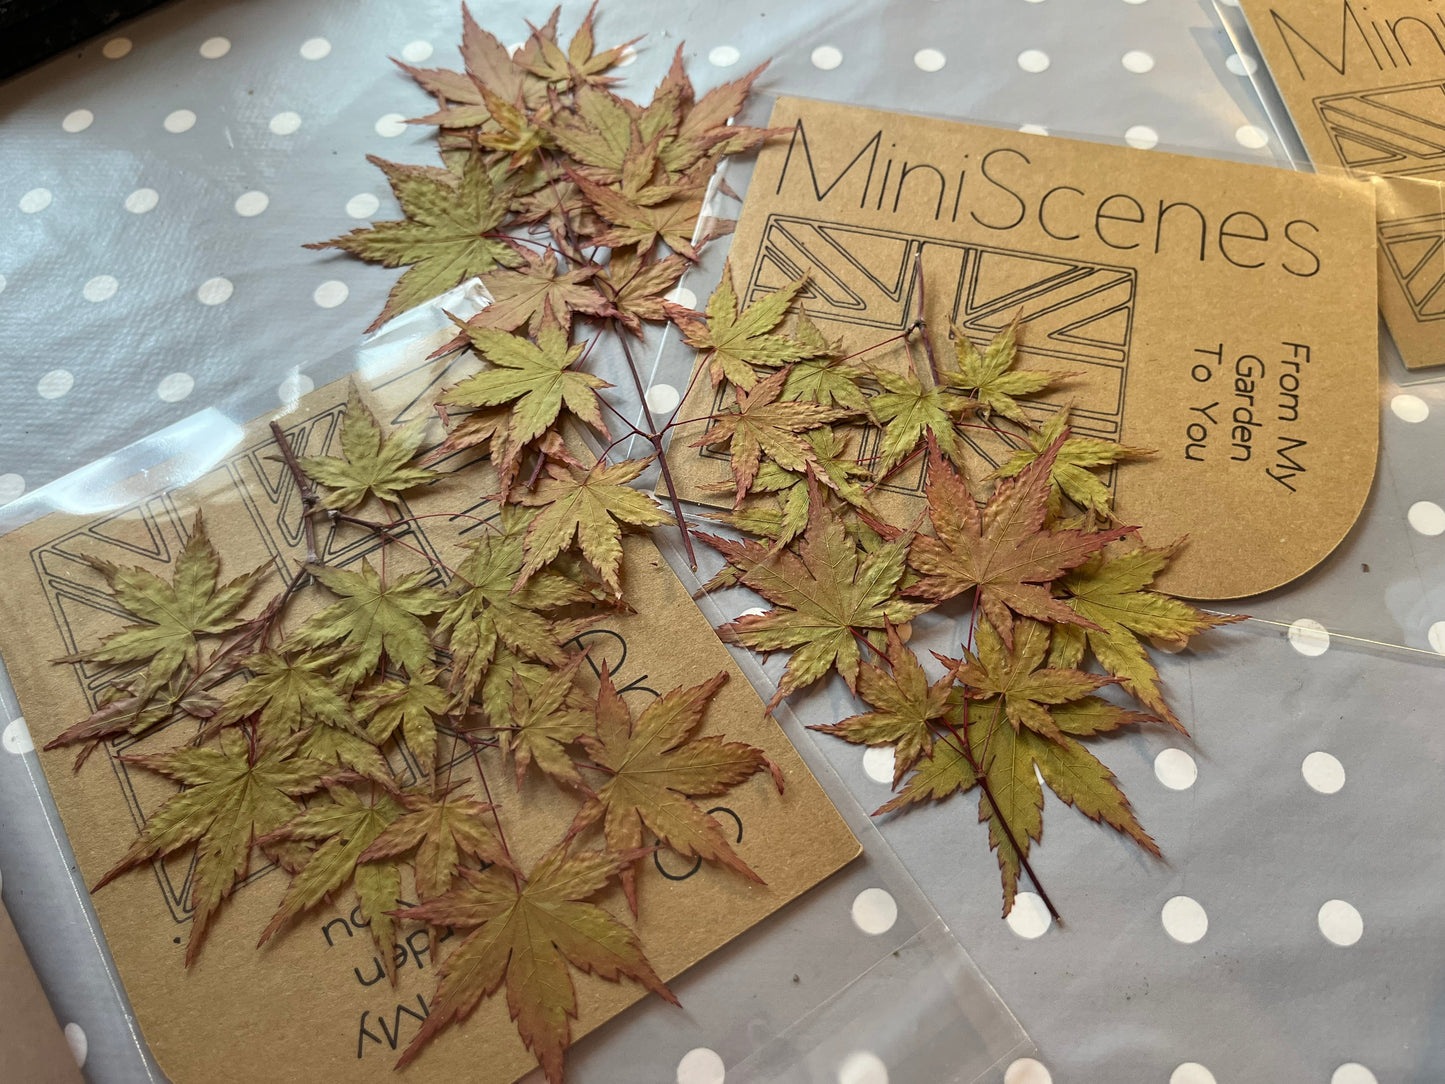 Acer (Japanese Maple) Bonsai  Leaves for resin craft